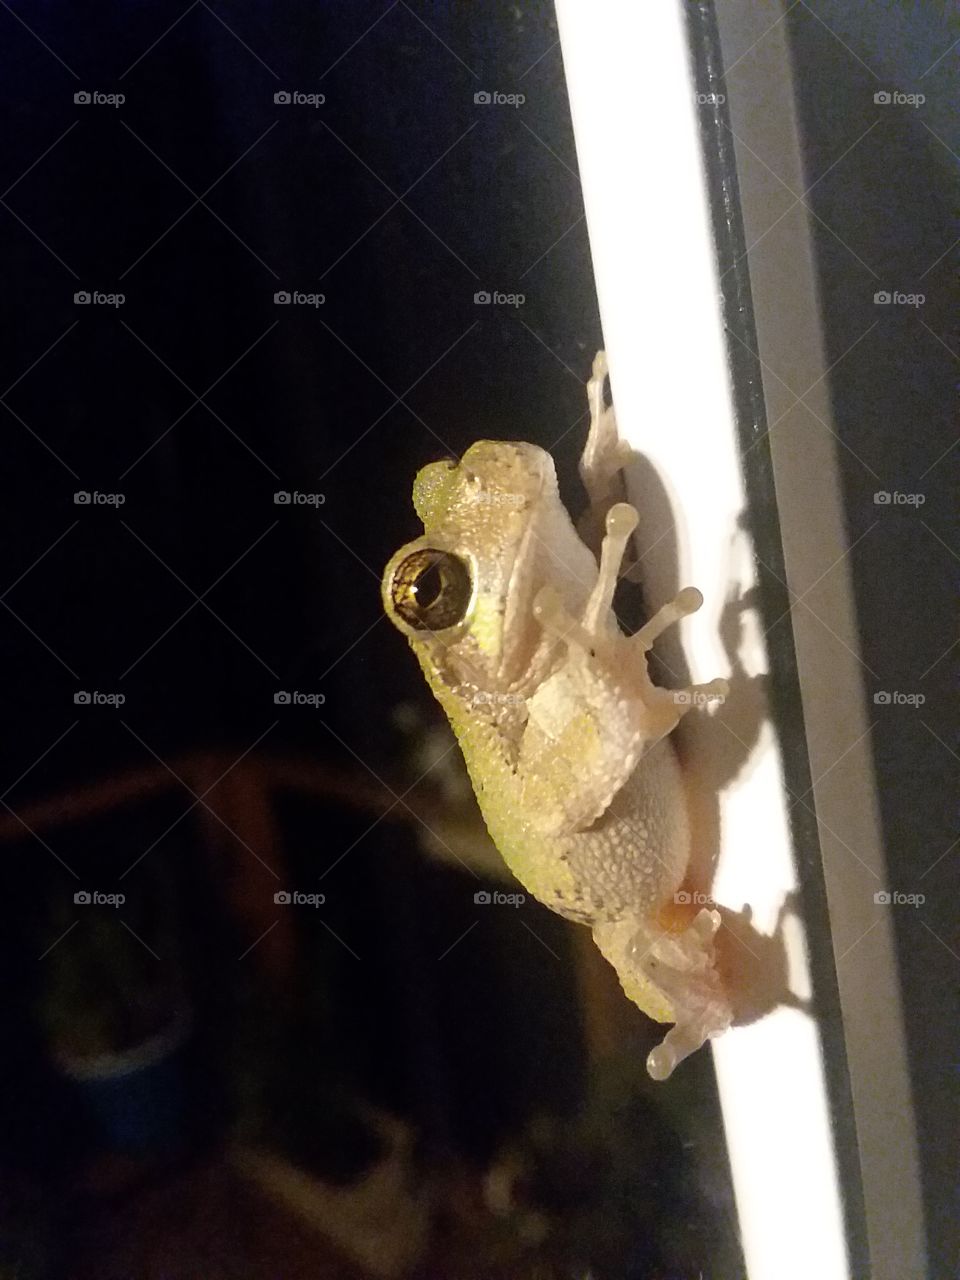 Tree frog on my door